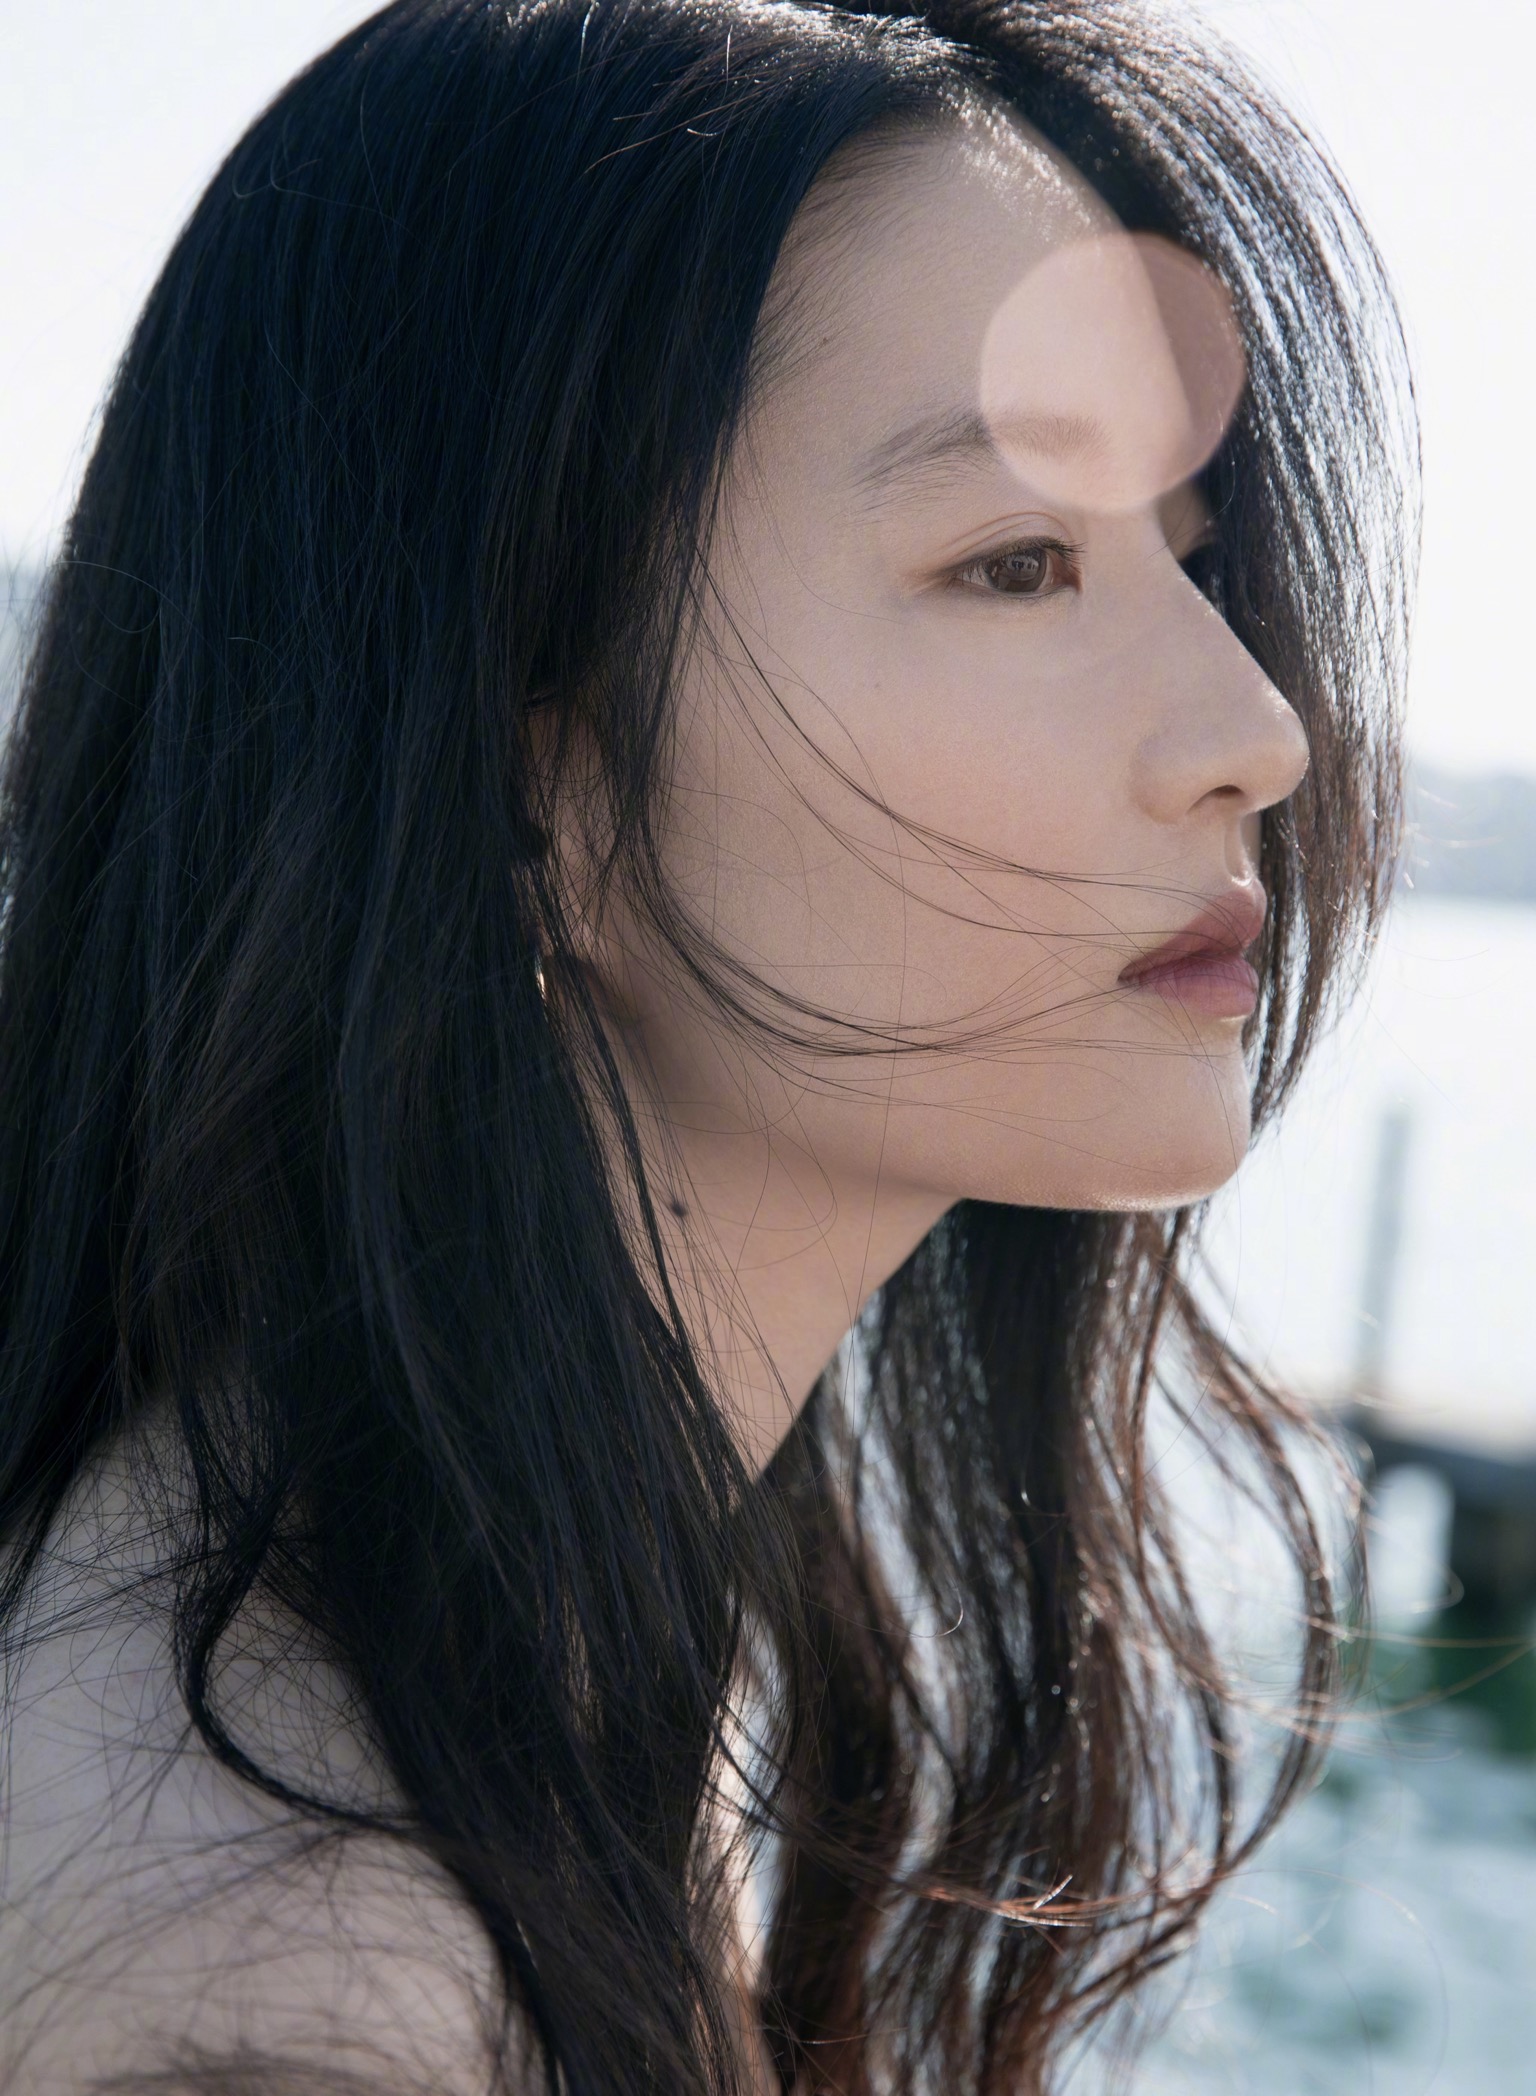 People 1536x2096 Asian women celebrity actress Yifei Liu